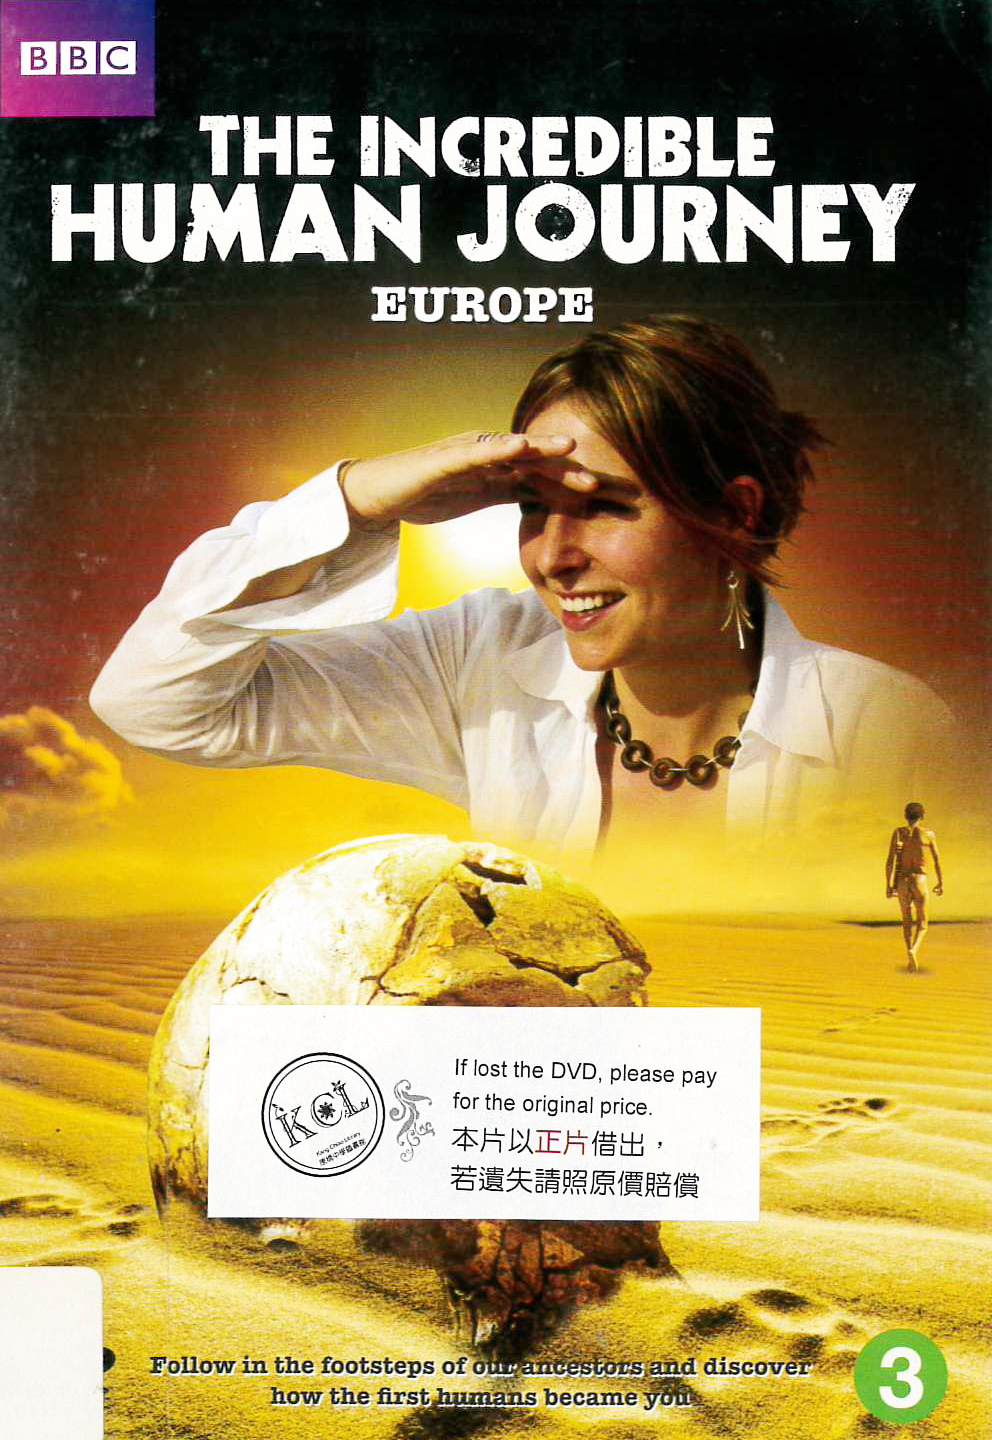 人類進化驚奇[3] : The indredible human journey [3] : Europe : 歐洲